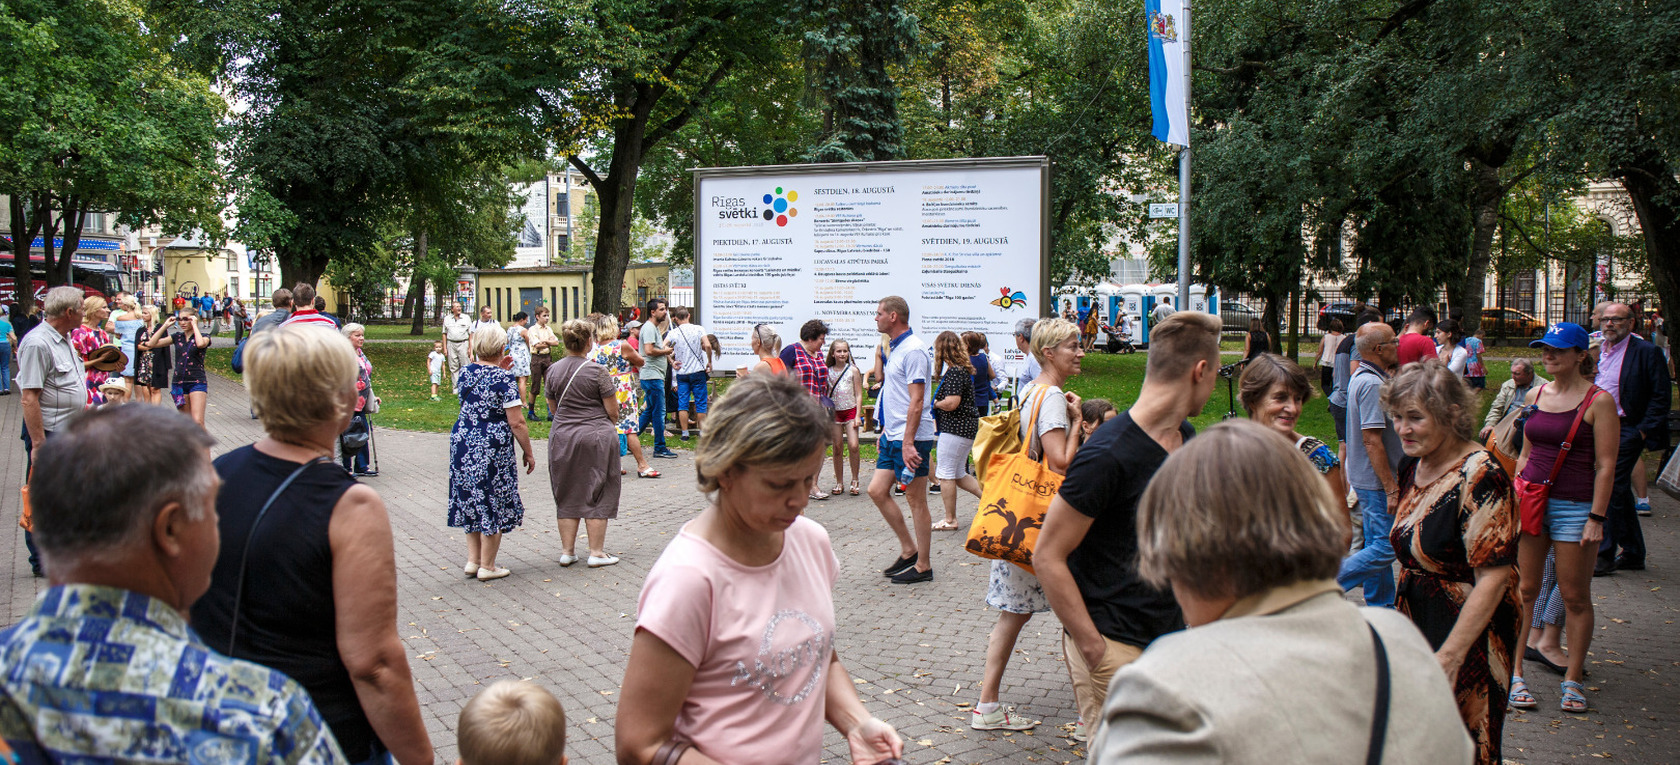 Rīgas svētkos Latviešu biedrība svin 150. gadadienu